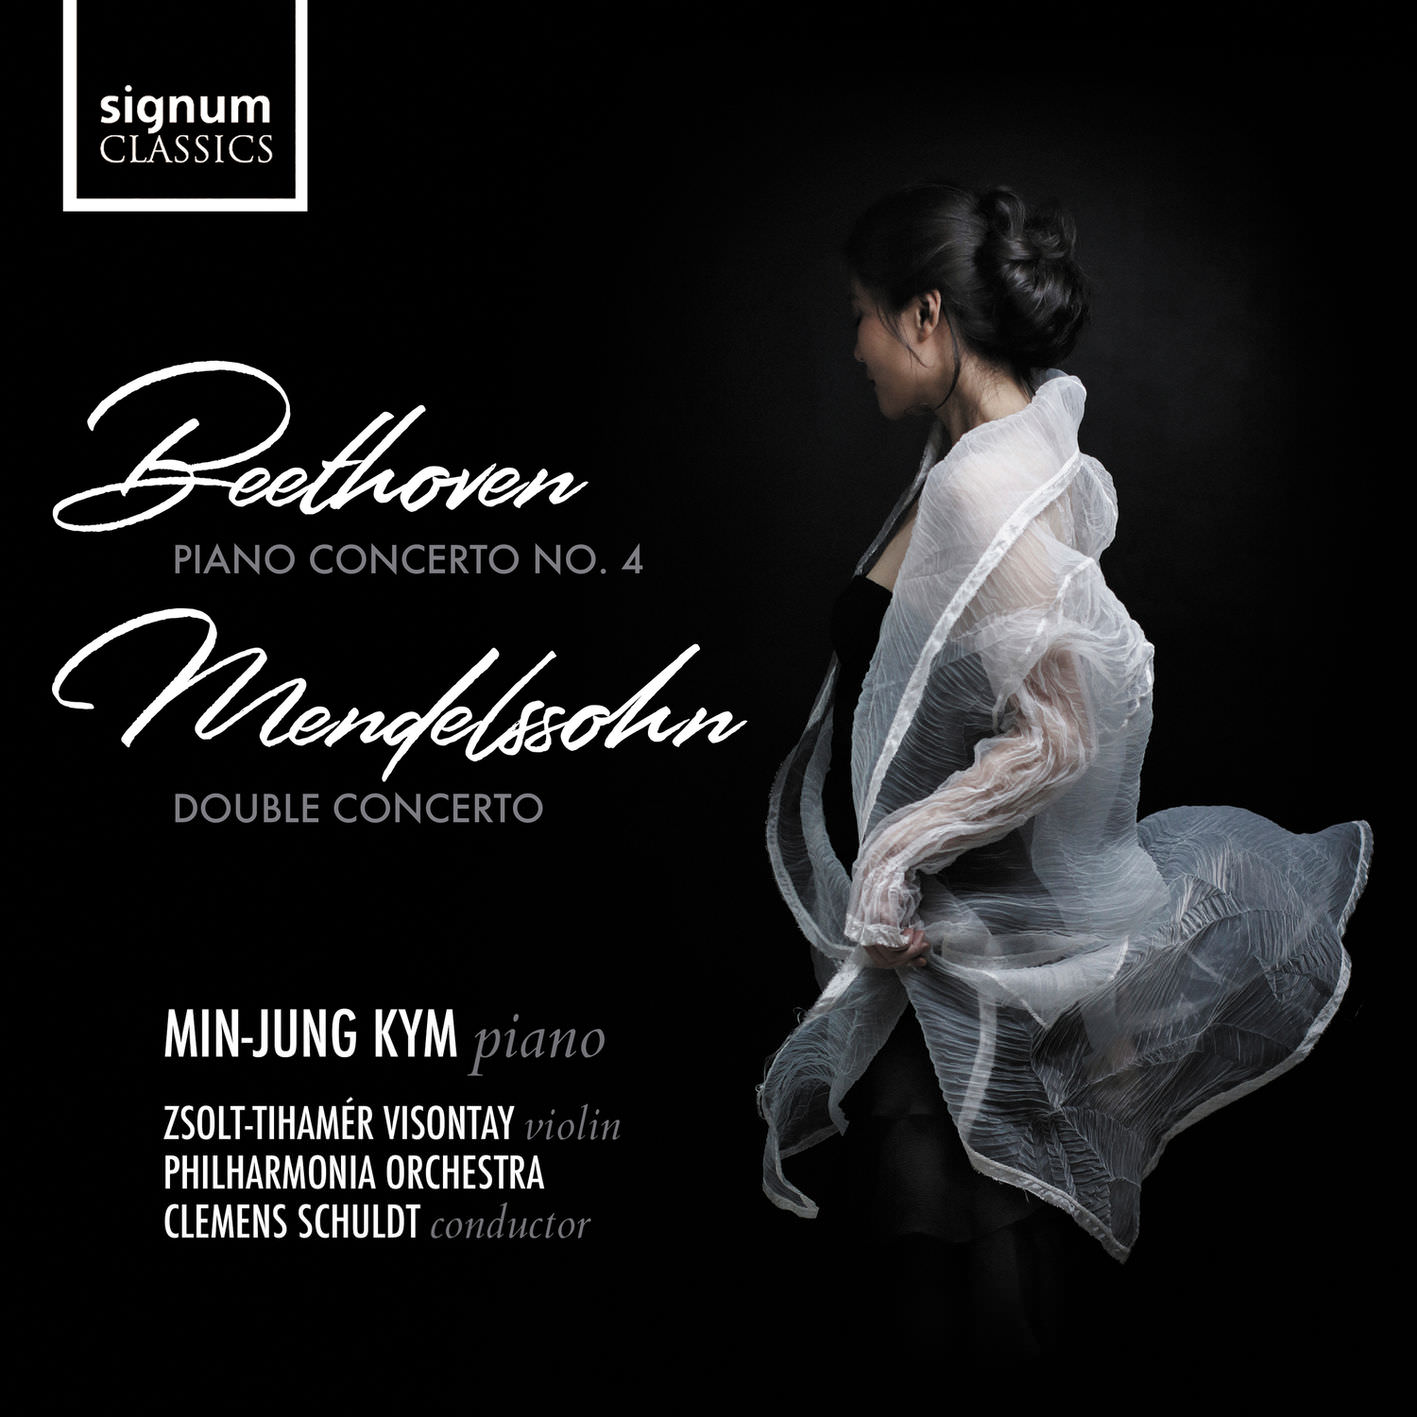 Min-Jung Kym – Beethoven: Piano Concerto No. 4 & Mendelssohn: Double Concerto (2018) [FLAC 24bit/192kHz]